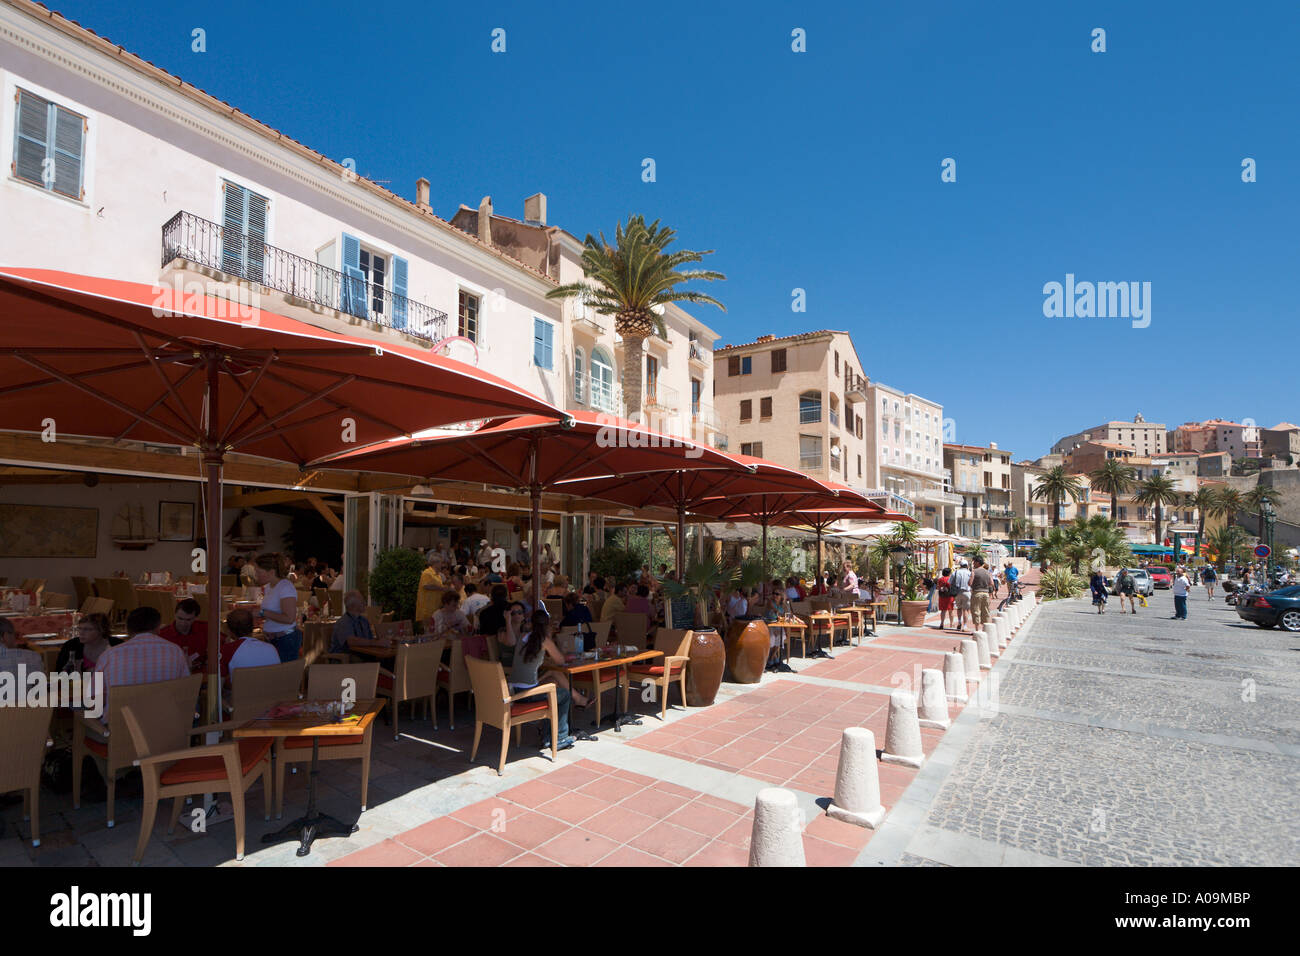 Harbourfront Restaurant mittags mit der Zitadelle in der Ferne, Calvi, La Balagne, Korsika, Frankreich Stockfoto